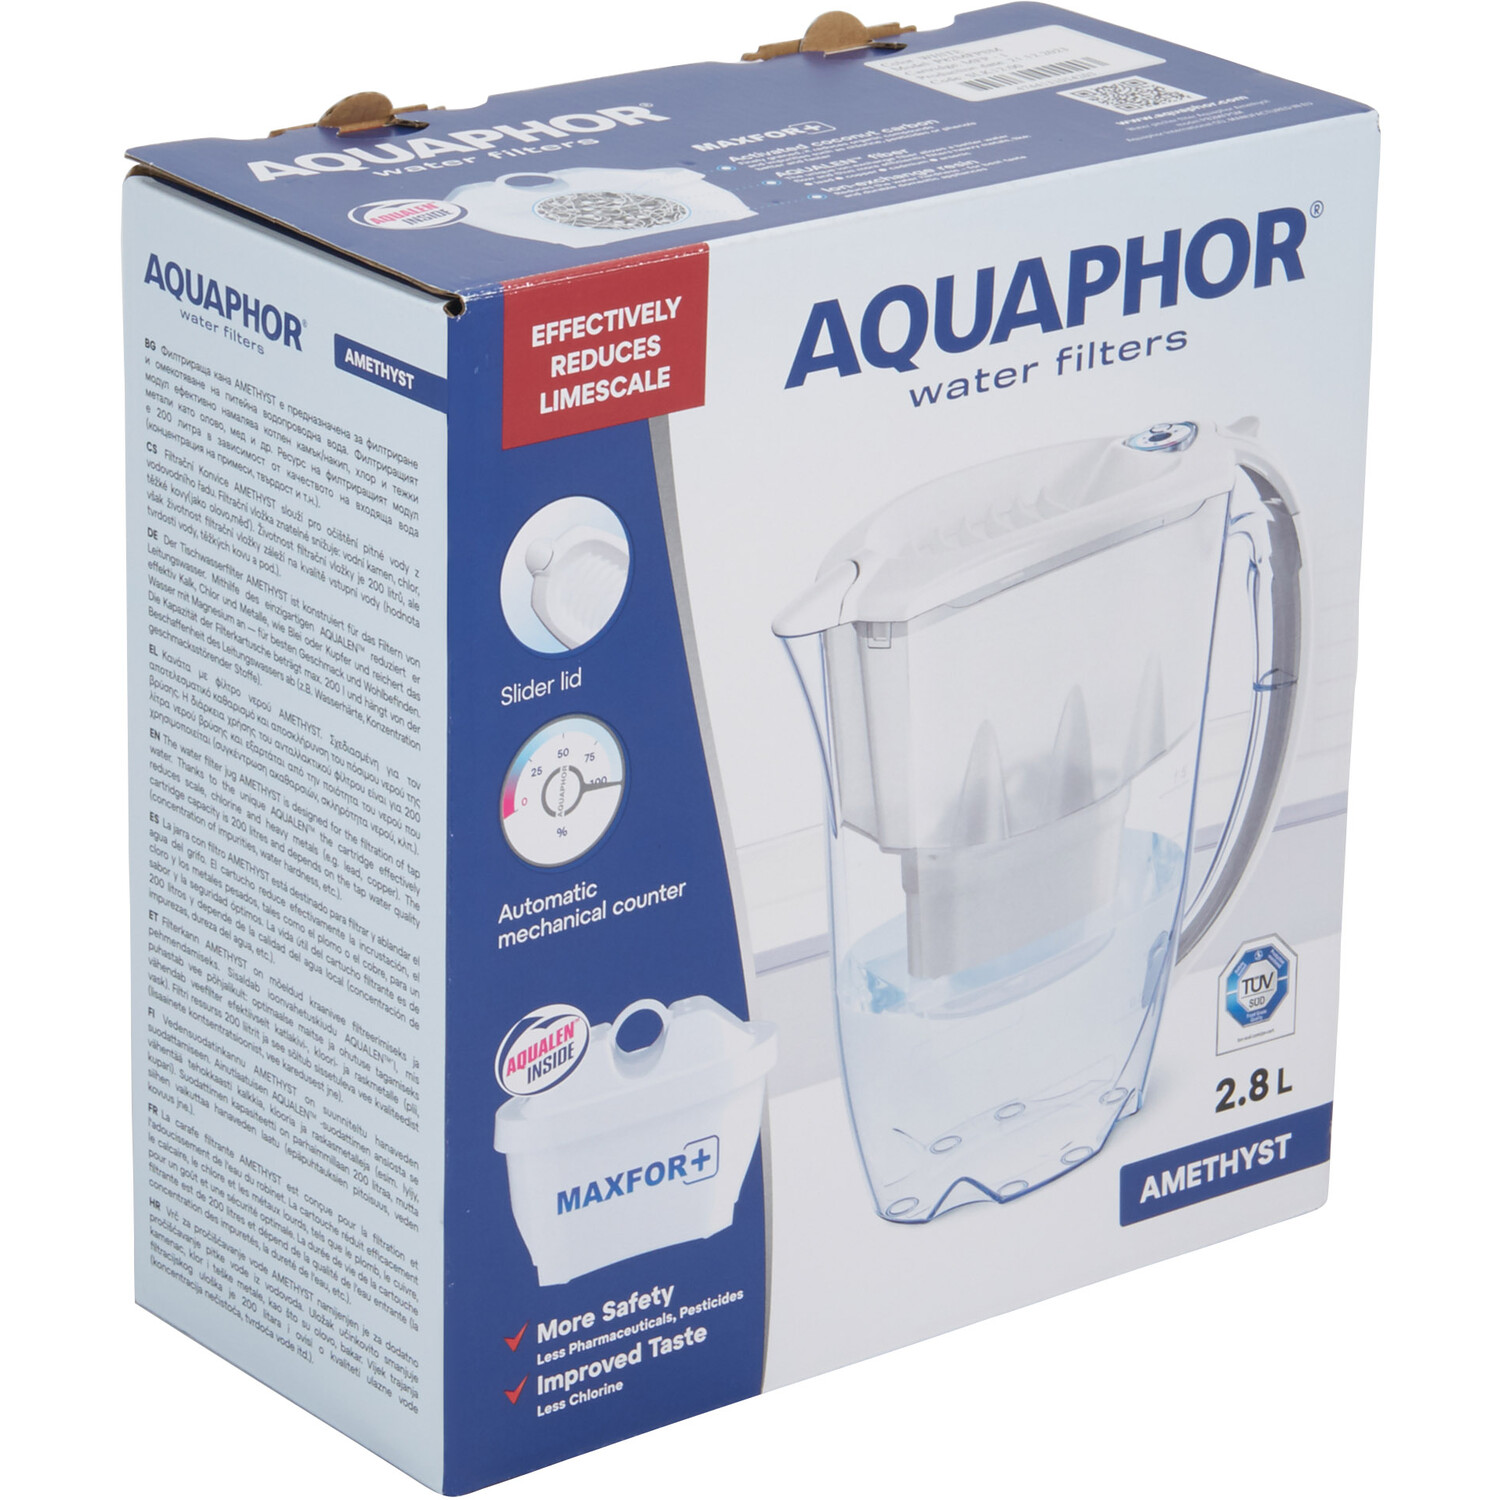 Aquaphor Amethyst 2.8l Water Filter Jug - White Image 2